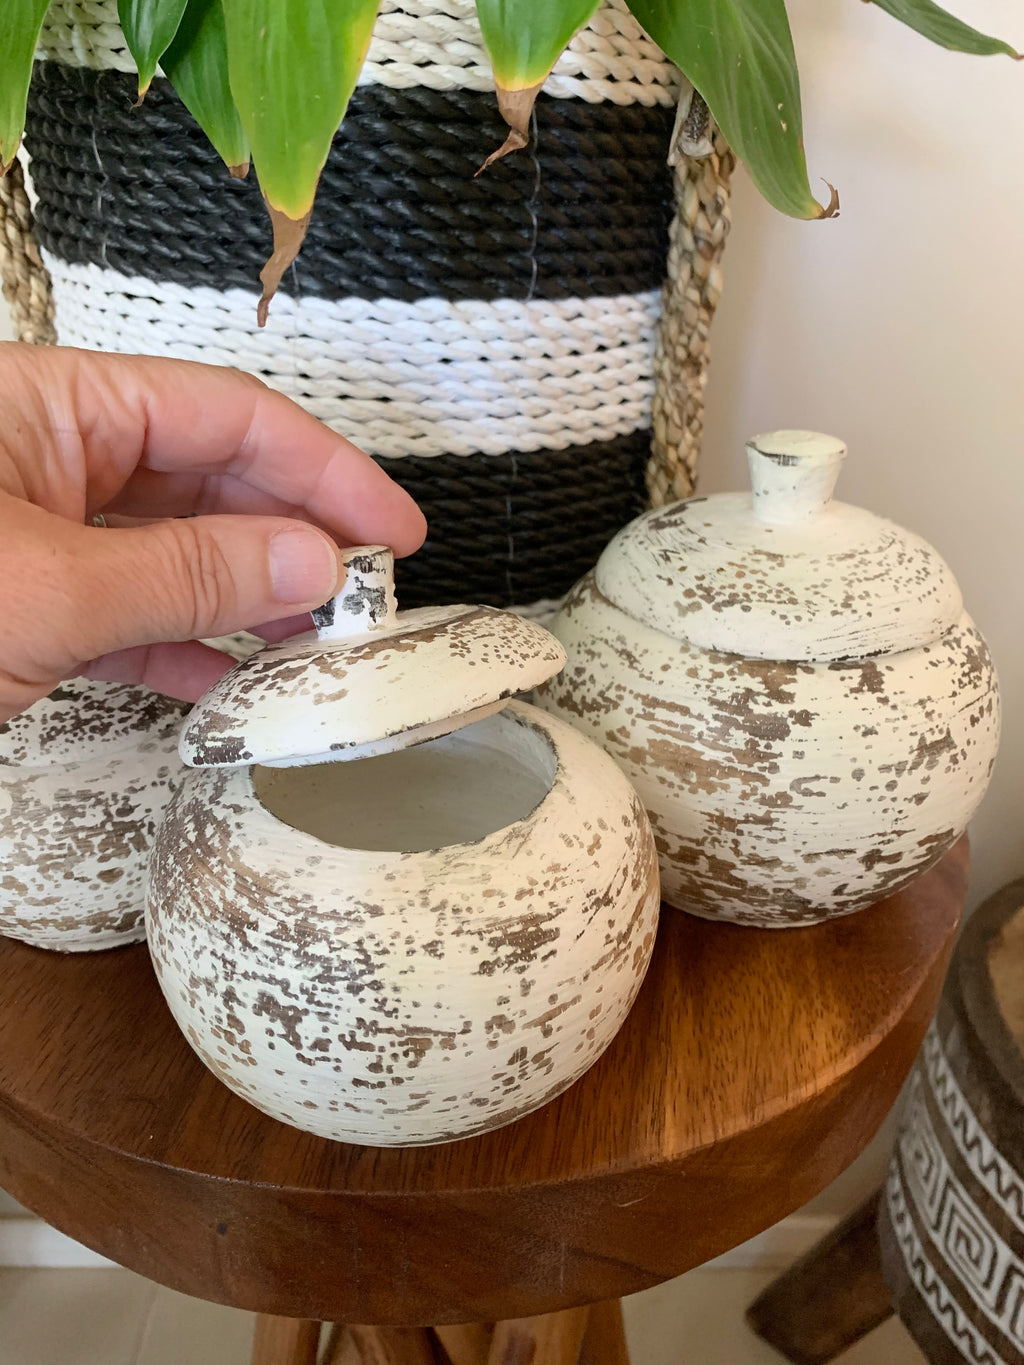 Set 3 white pots with lids